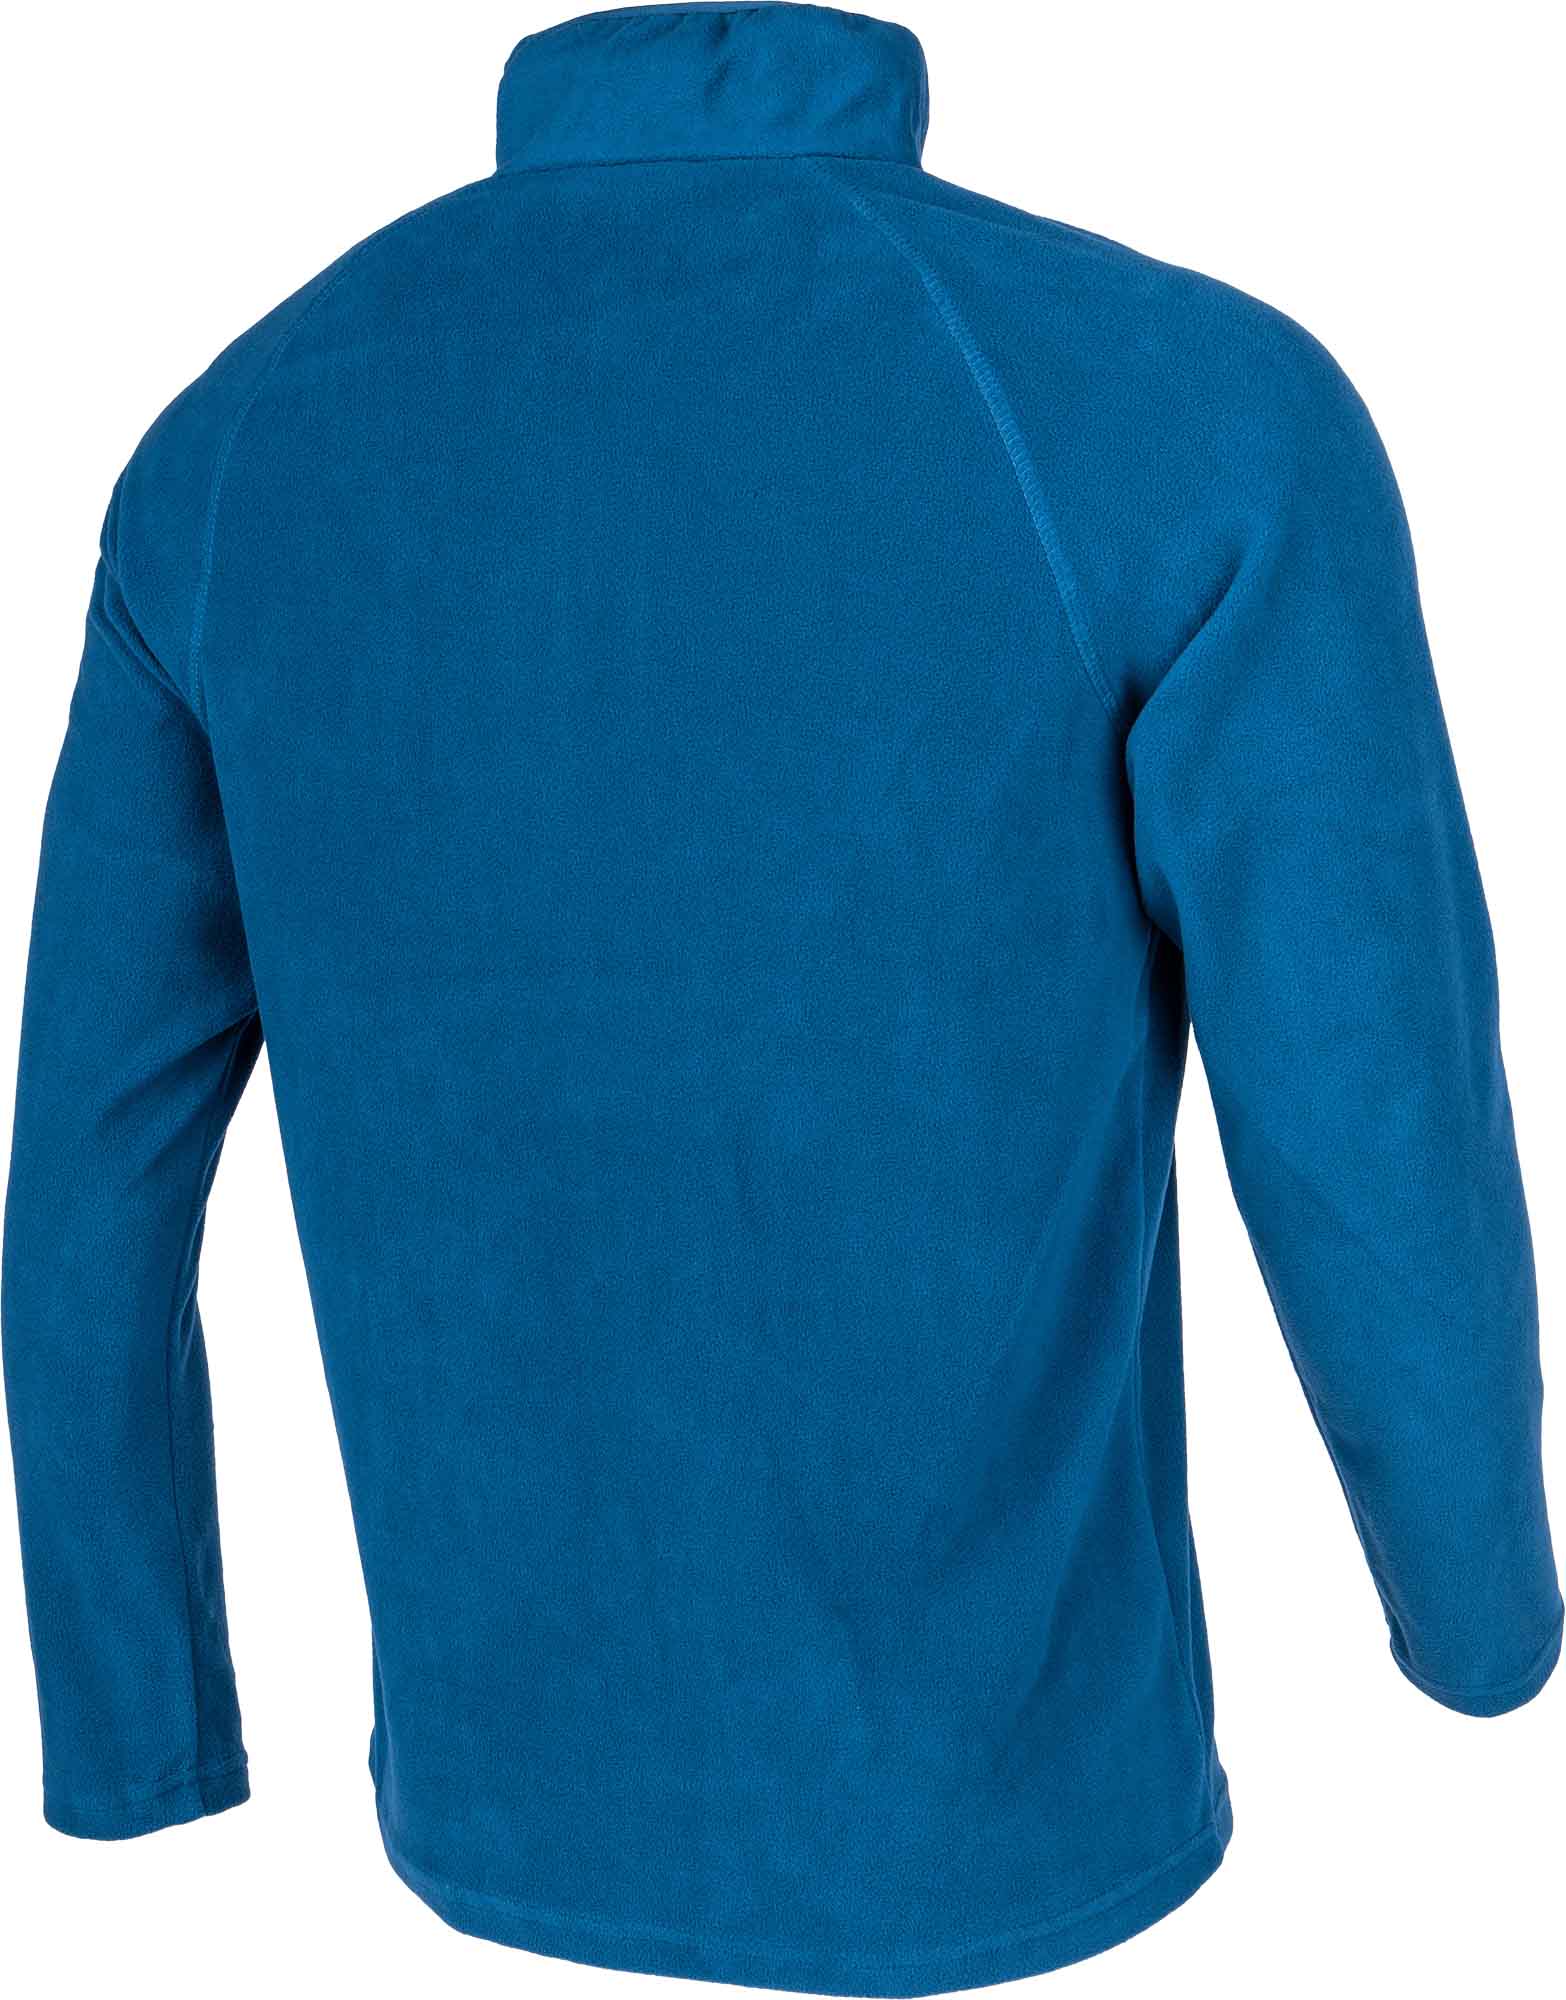 Men's microfleece sweatshirt